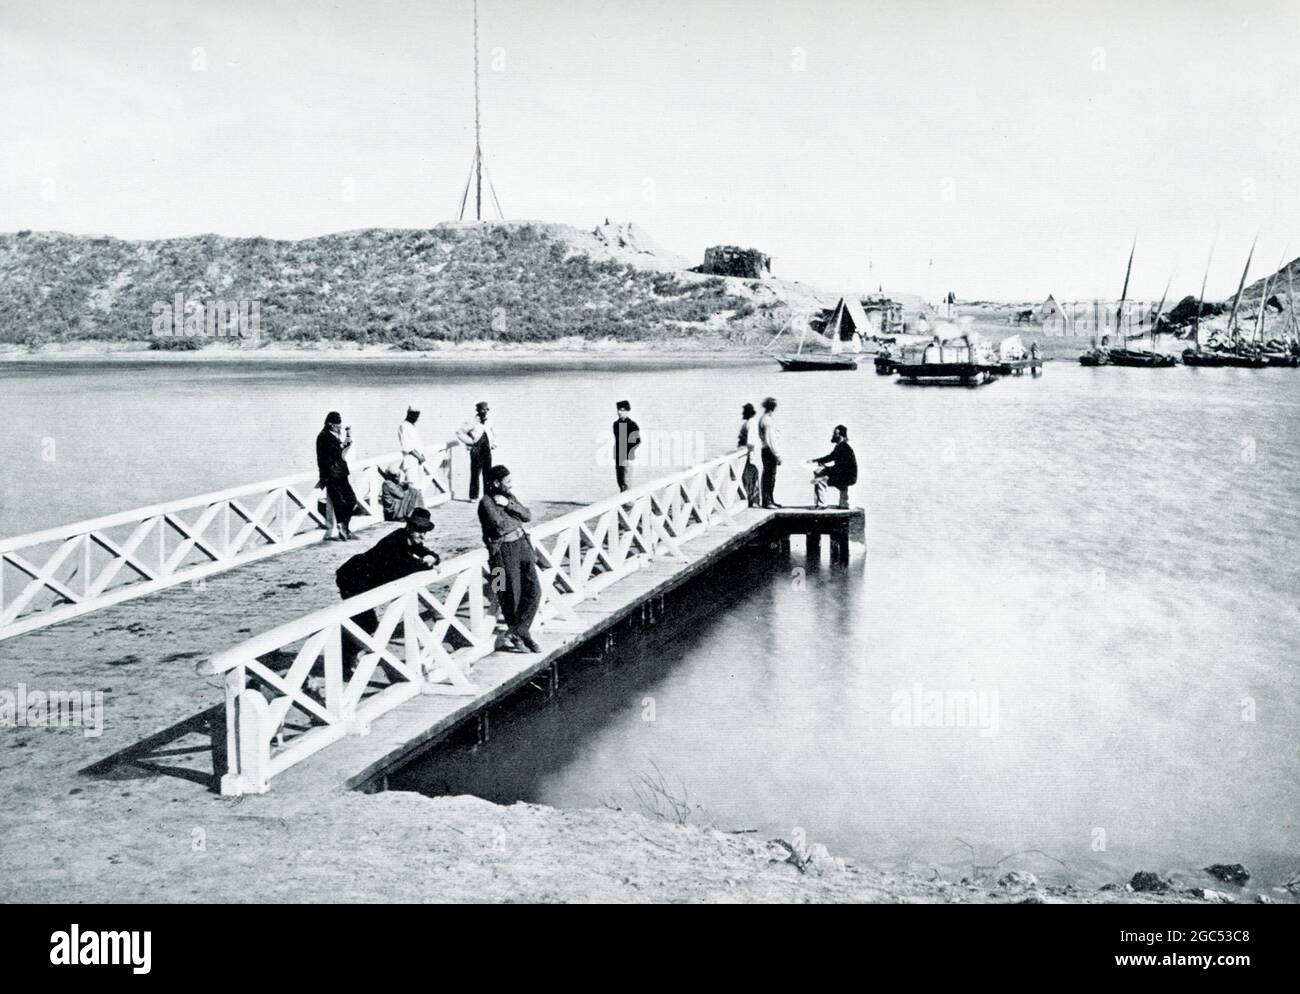 La didascalia che accompagna questa illustrazione del 1903 nel libro di Gaston Maspero sulla storia dell'Egitto recita: "Traghetto sulla rotta dall'Egitto alla Siria - canale di Suez". Foto Stock